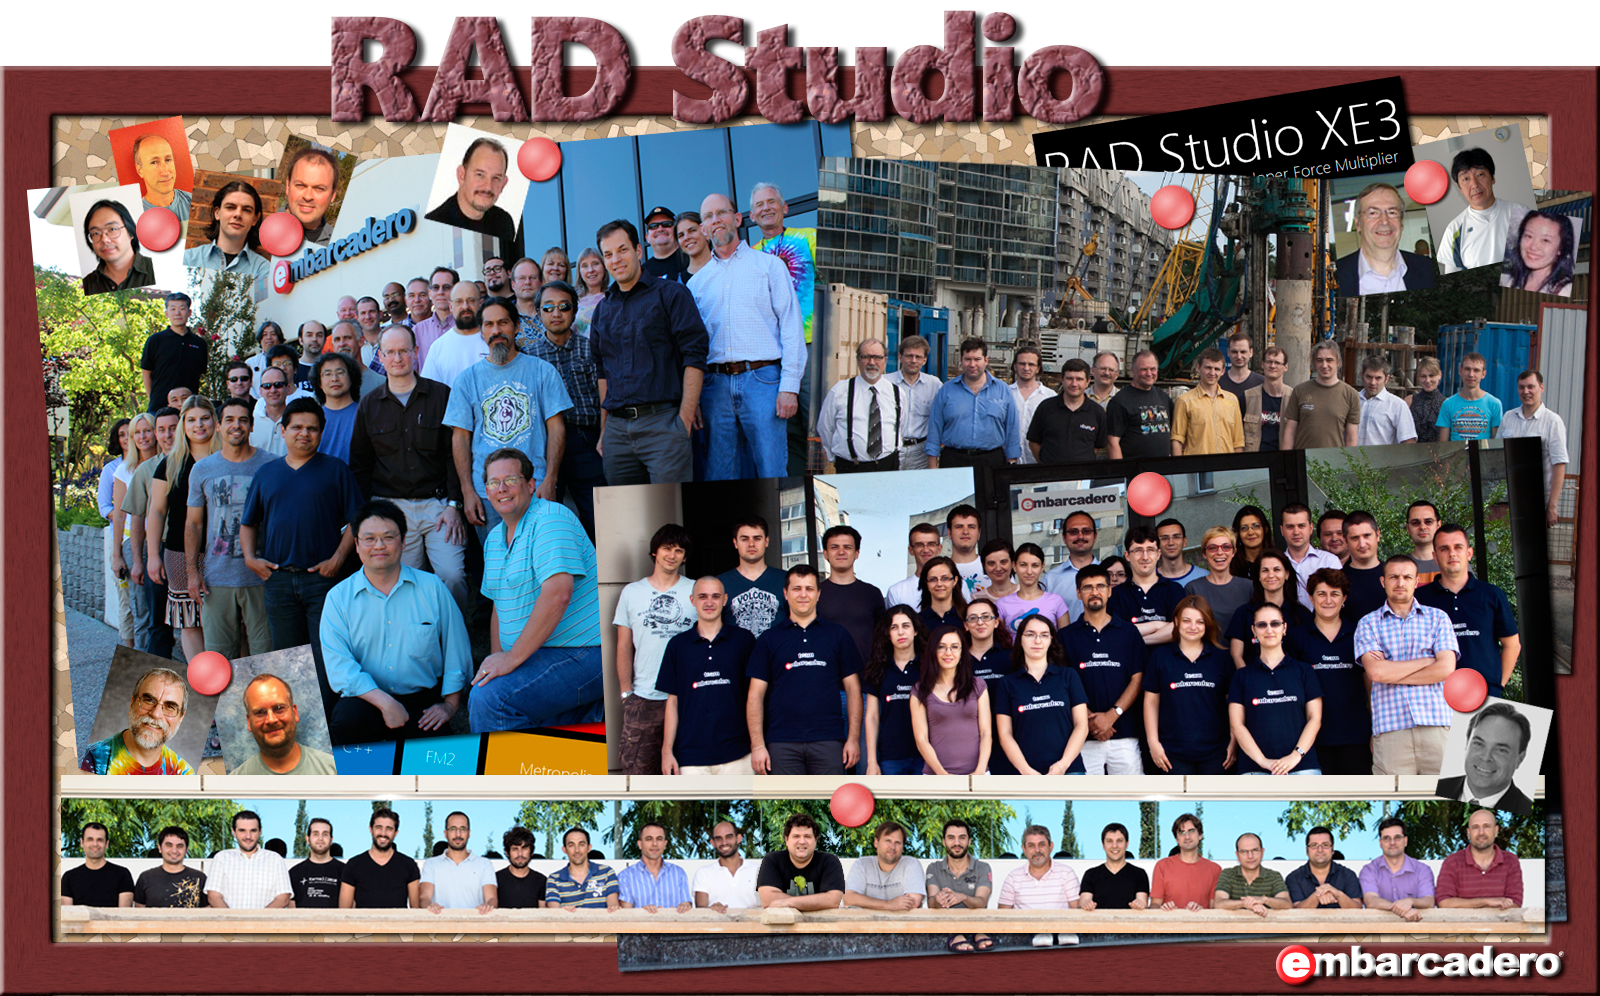 RAD Studio XE4 team (XE3 team, actually) image